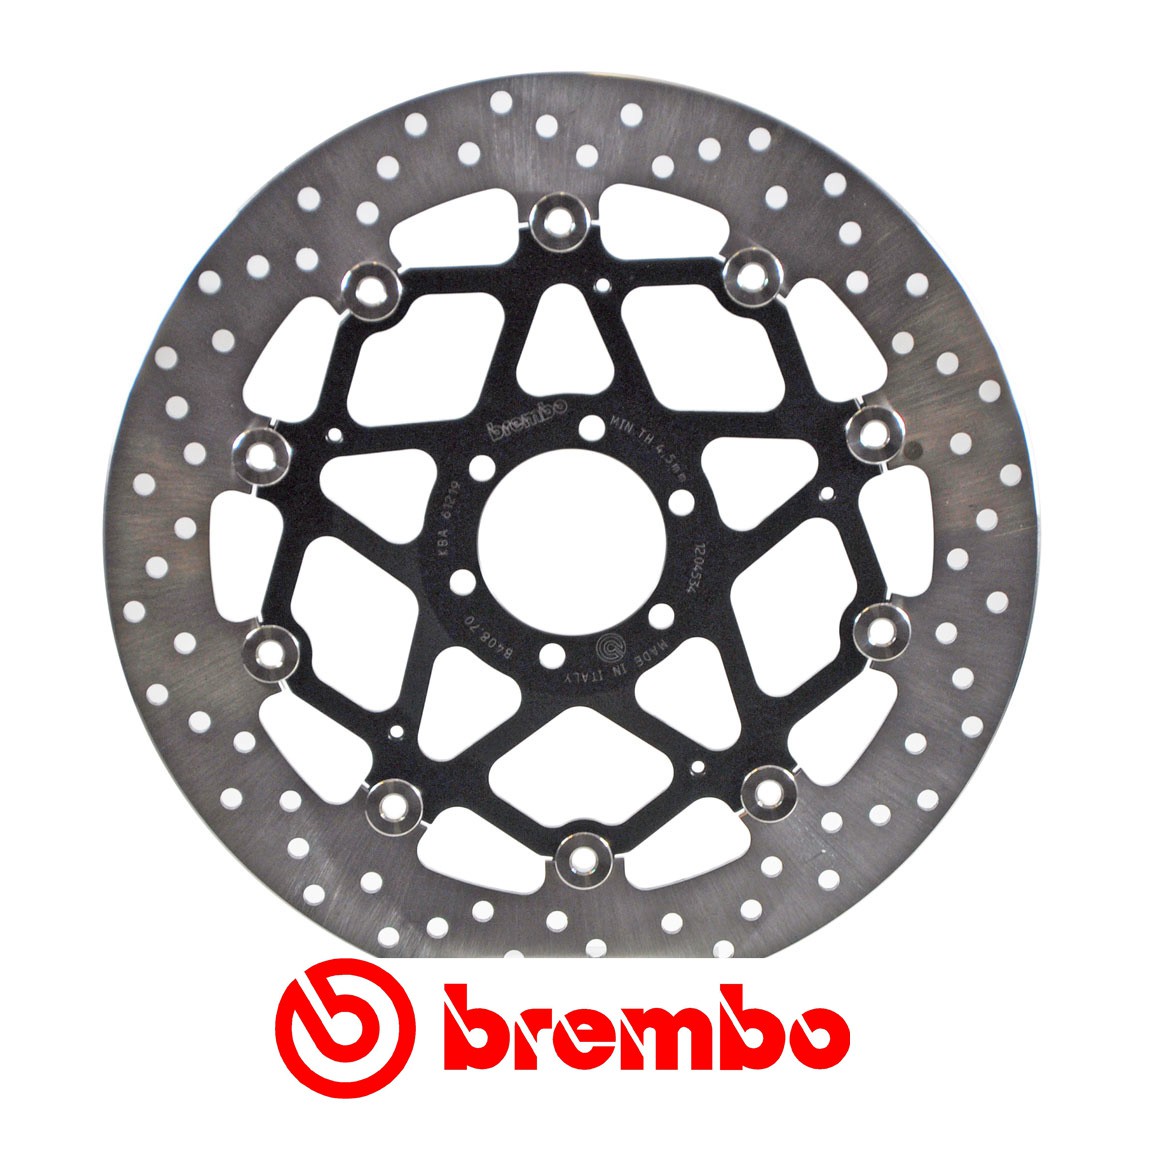 Disque de frein avant Brembo pour 690 SM (07-10) 690 Supermoto R (2008)